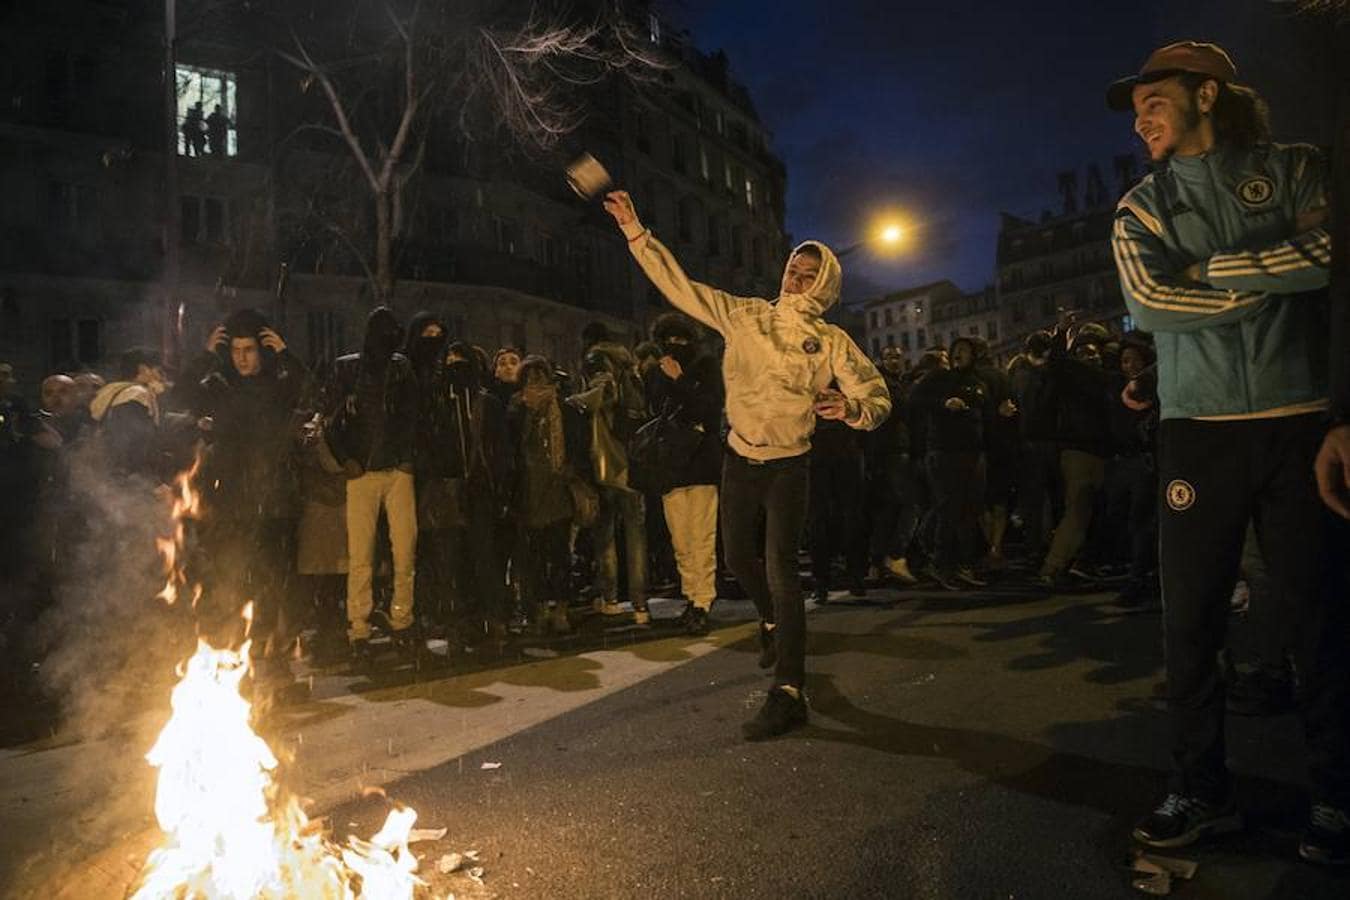 Nueva ola de protestas en París